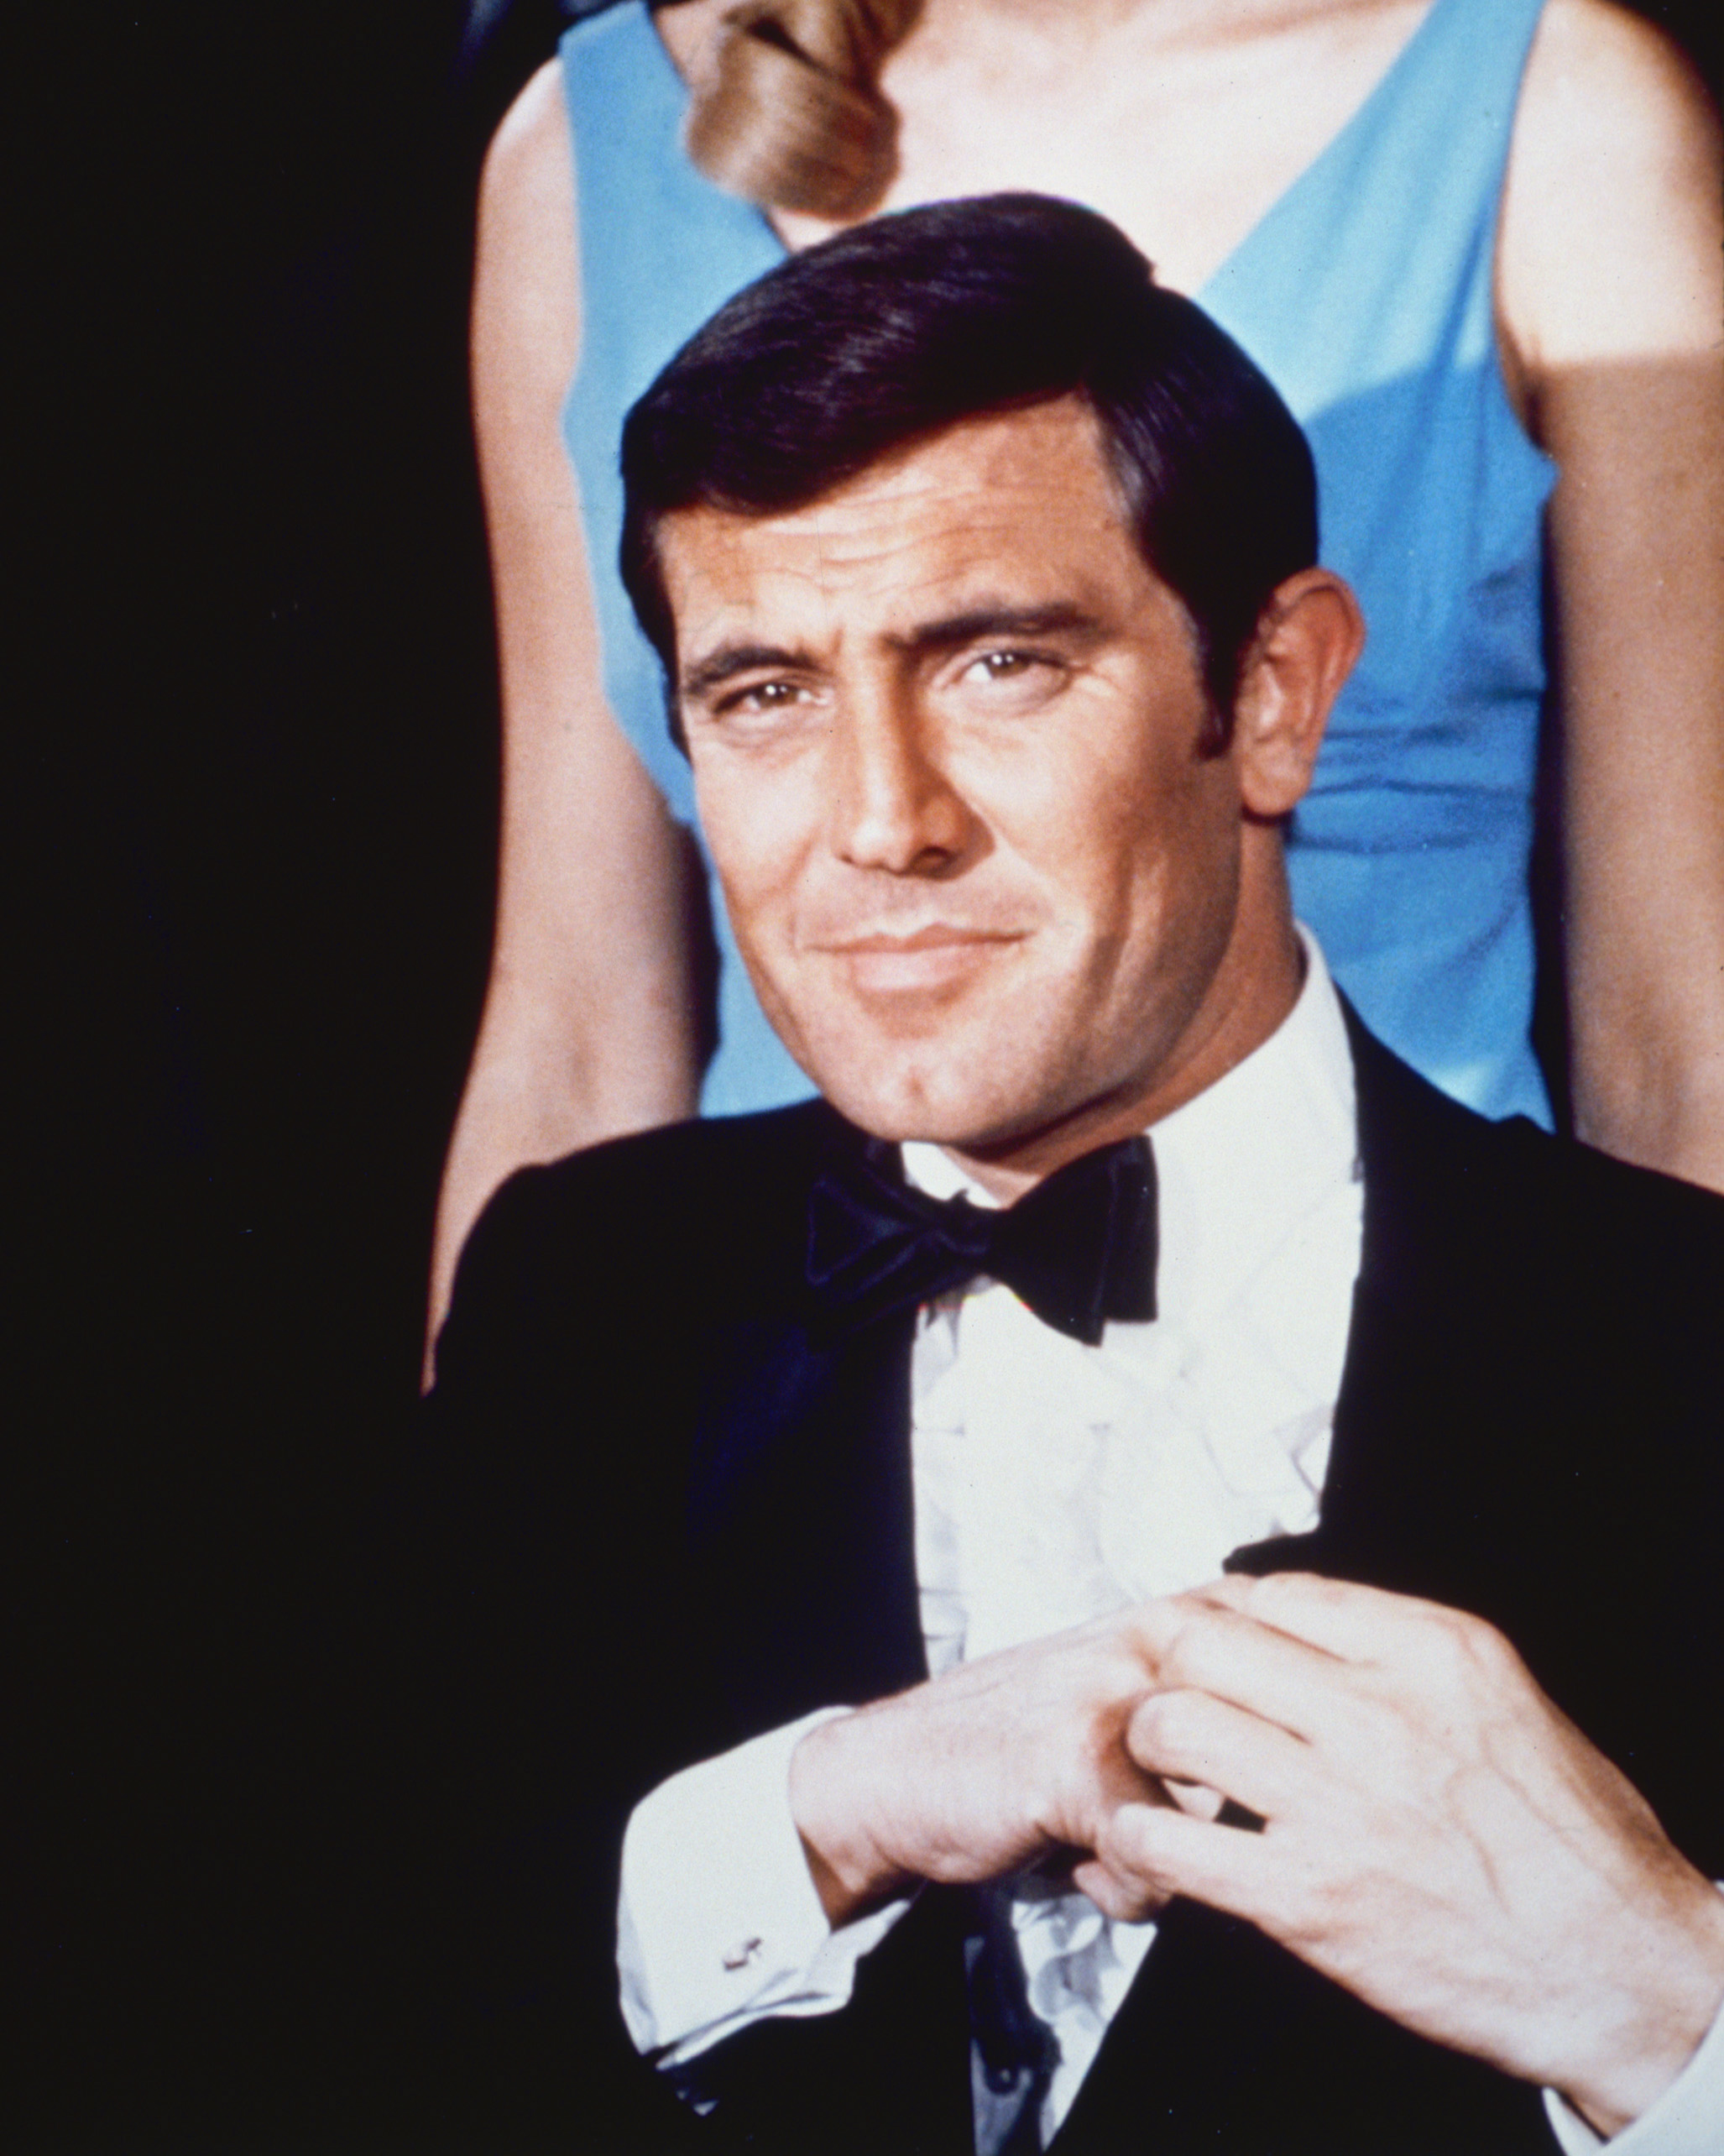 L'acteur incanrant James Bond dans le film "Au service secret de Sa Majesté" en 1969 | Source : Getty Images